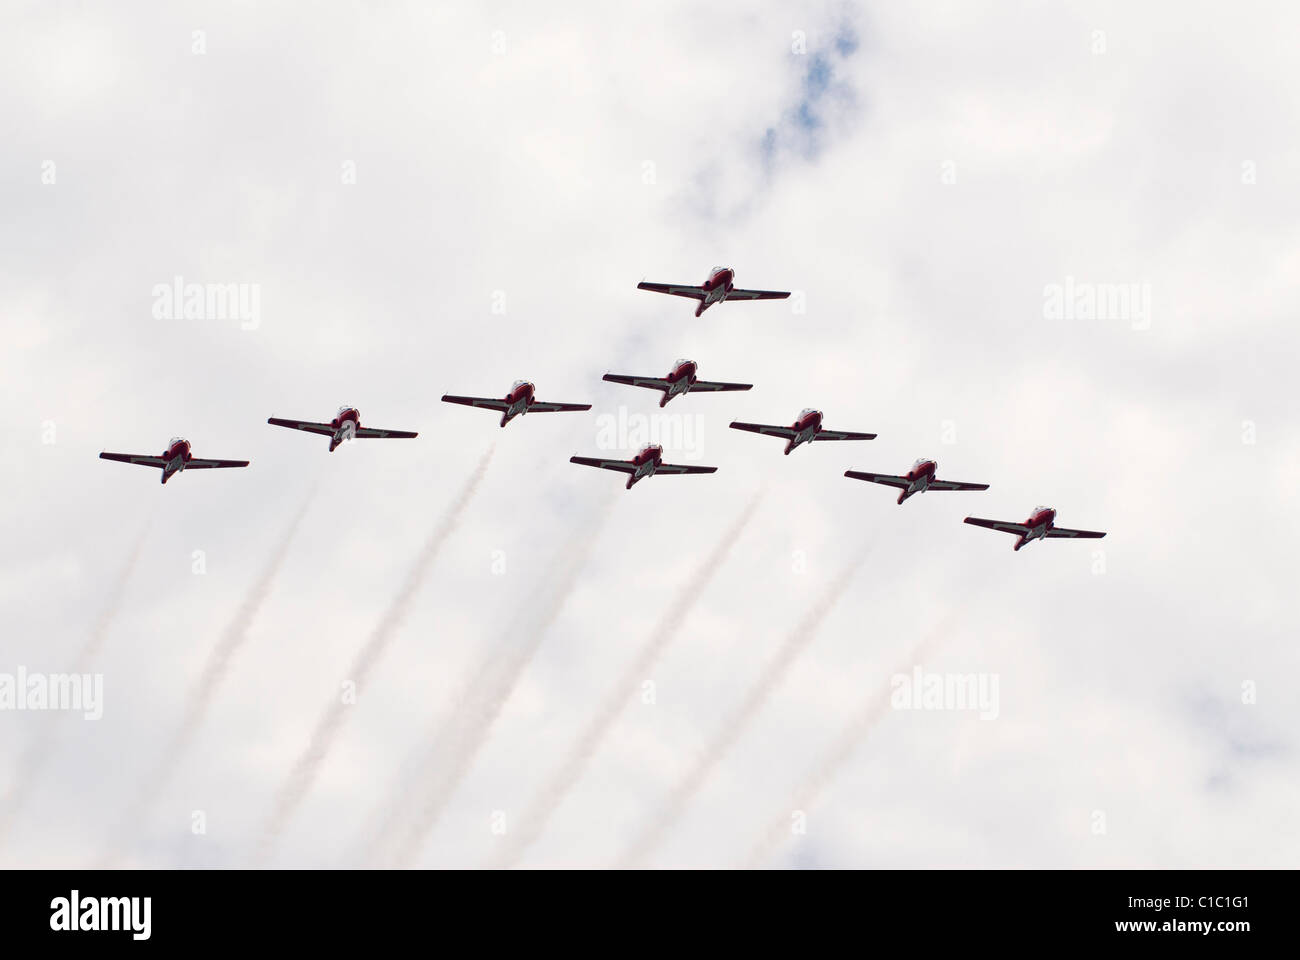 L'équipe de démonstration aérienne des Snowbirds est un symbole canadien composé de membres actifs des Forces canadiennes. Banque D'Images